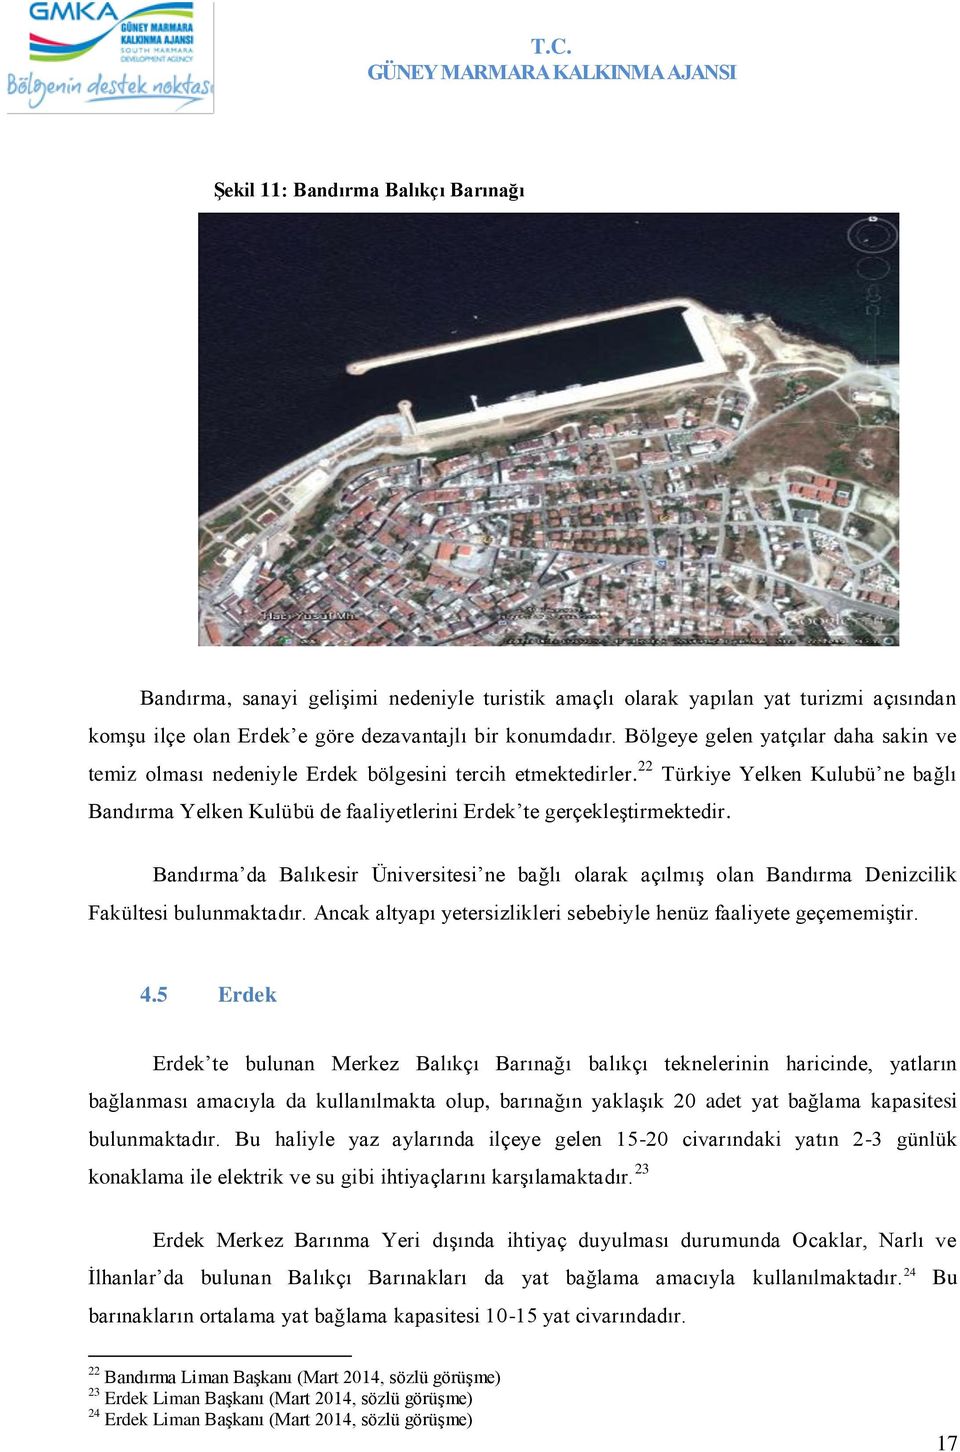 22 Türkiye Yelken Kulubü ne bağlı Bandırma Yelken Kulübü de faaliyetlerini Erdek te gerçekleştirmektedir.